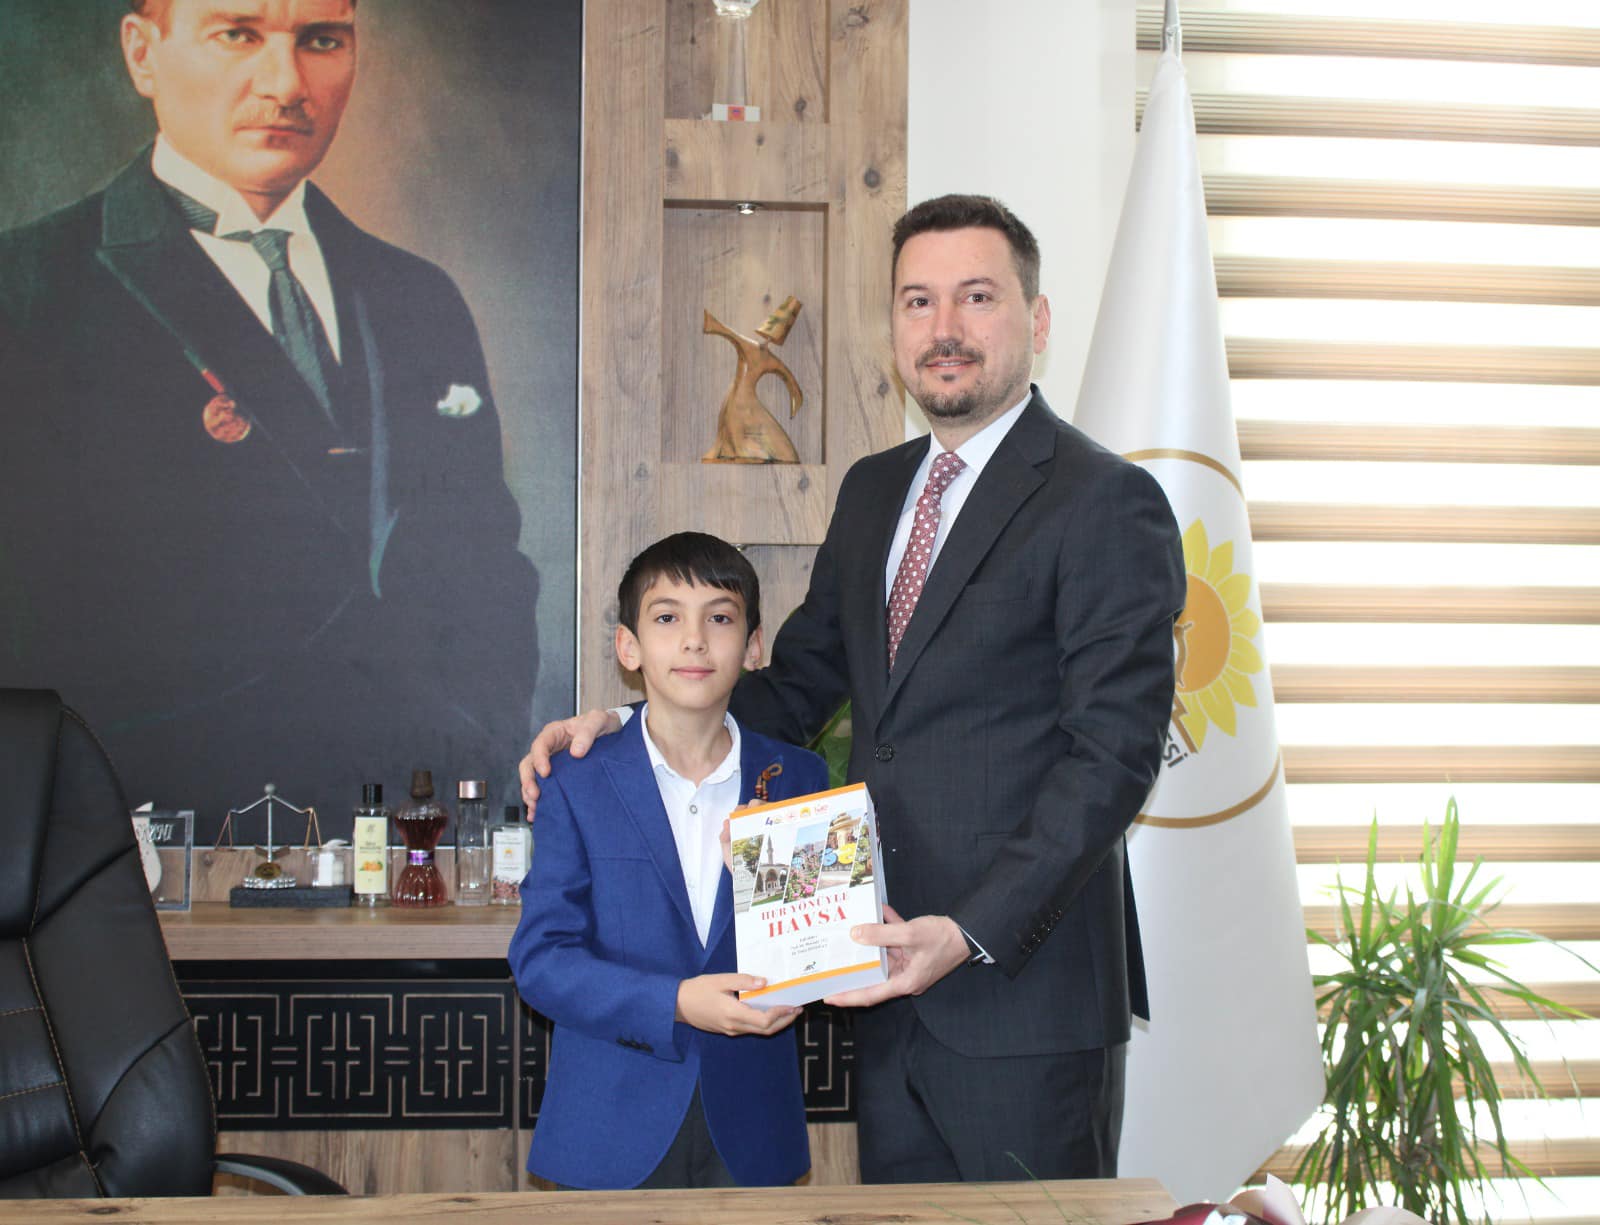 Belediye Başkanlığı makamı Melahat Kilimci Ortaokulu öğrencilerinden Hasan Ata Yıldız’a emanet et